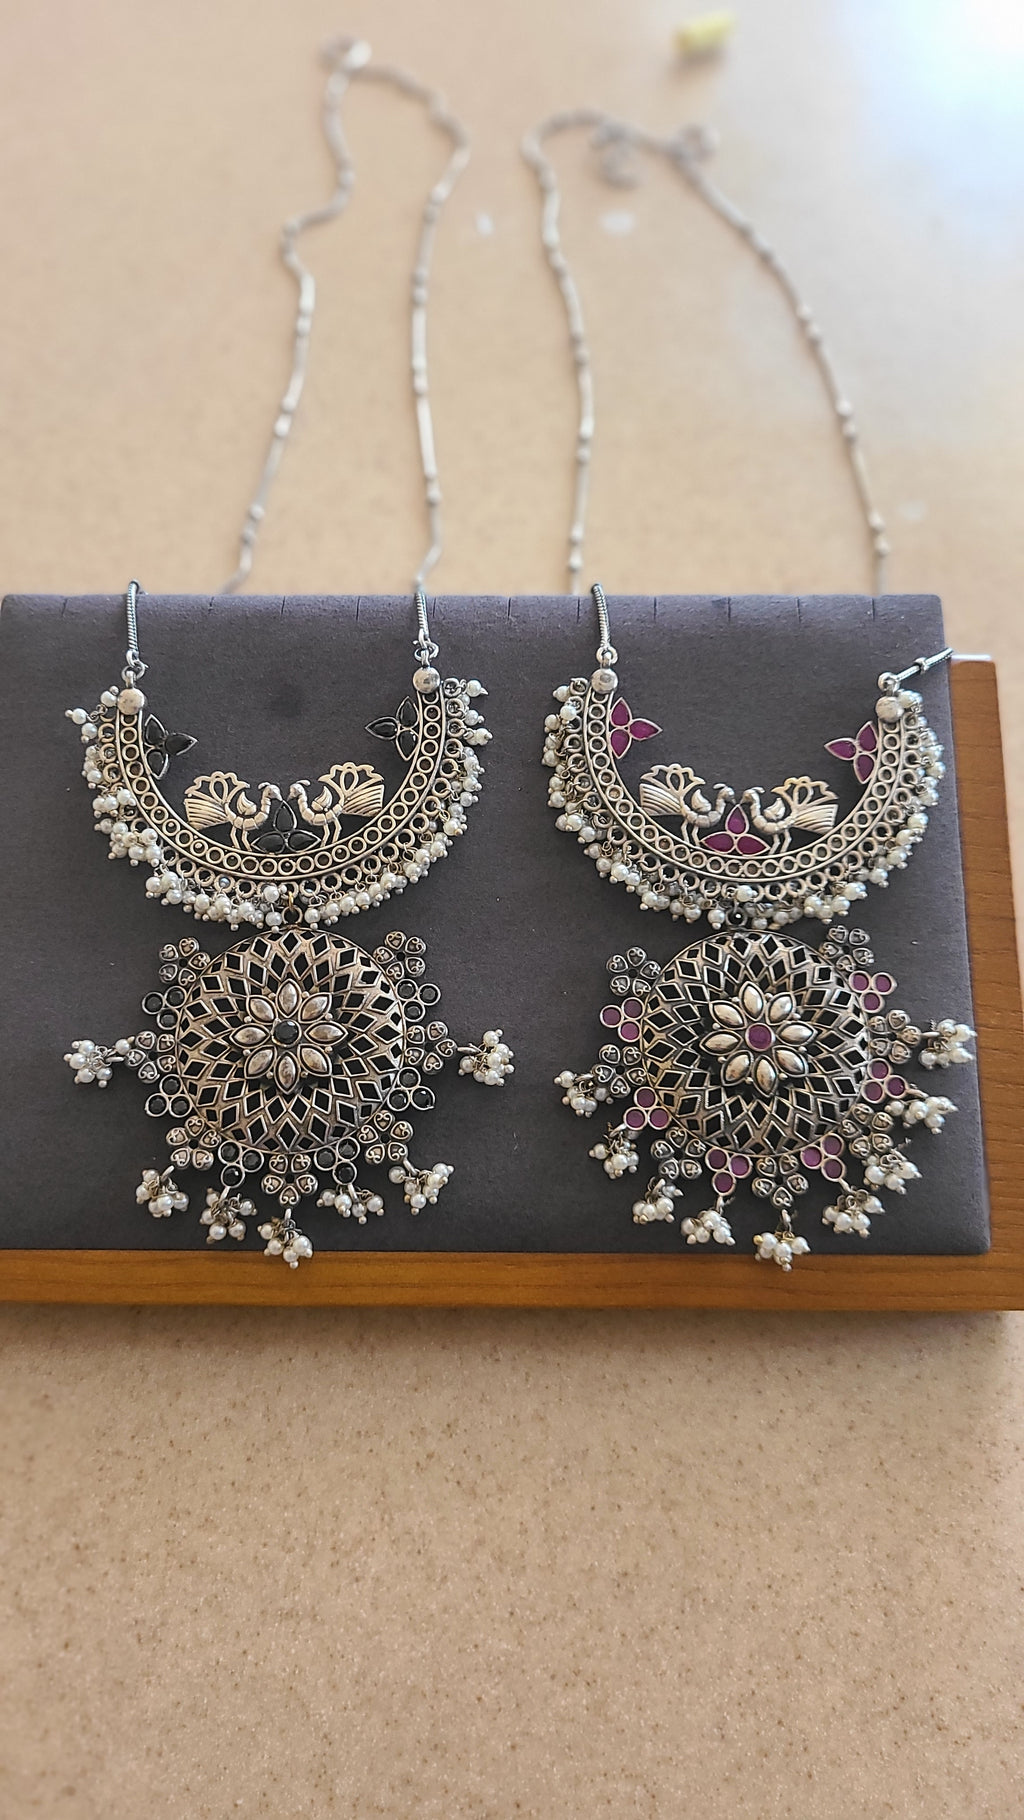 Maria Handmade contemporary pendant necklace set